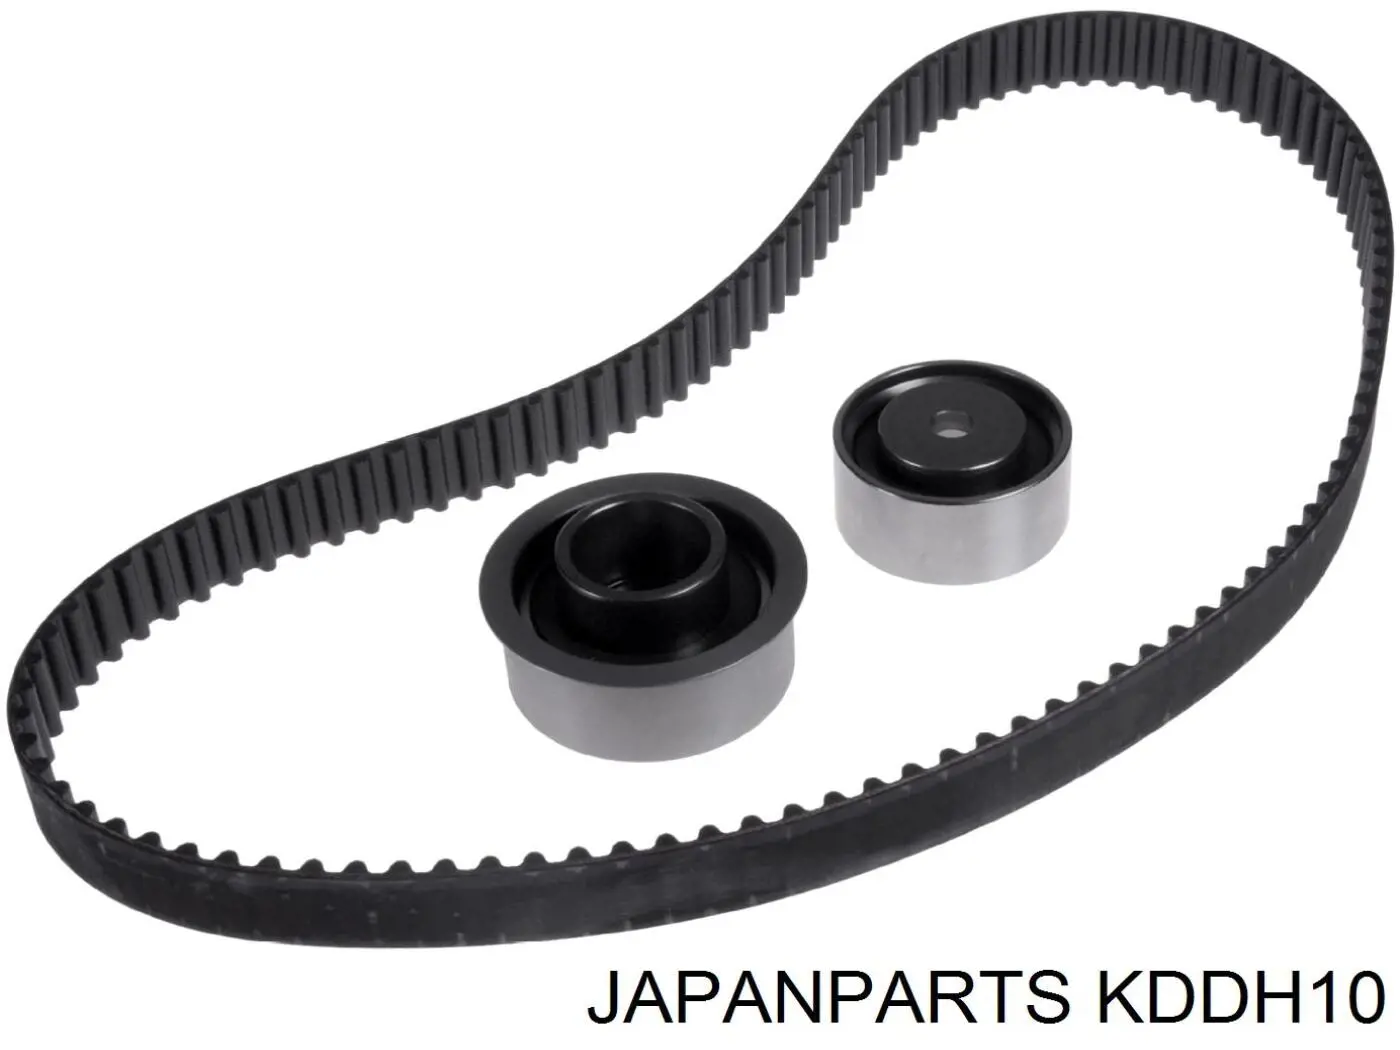 KDD-H10 Japan Parts комплект грм